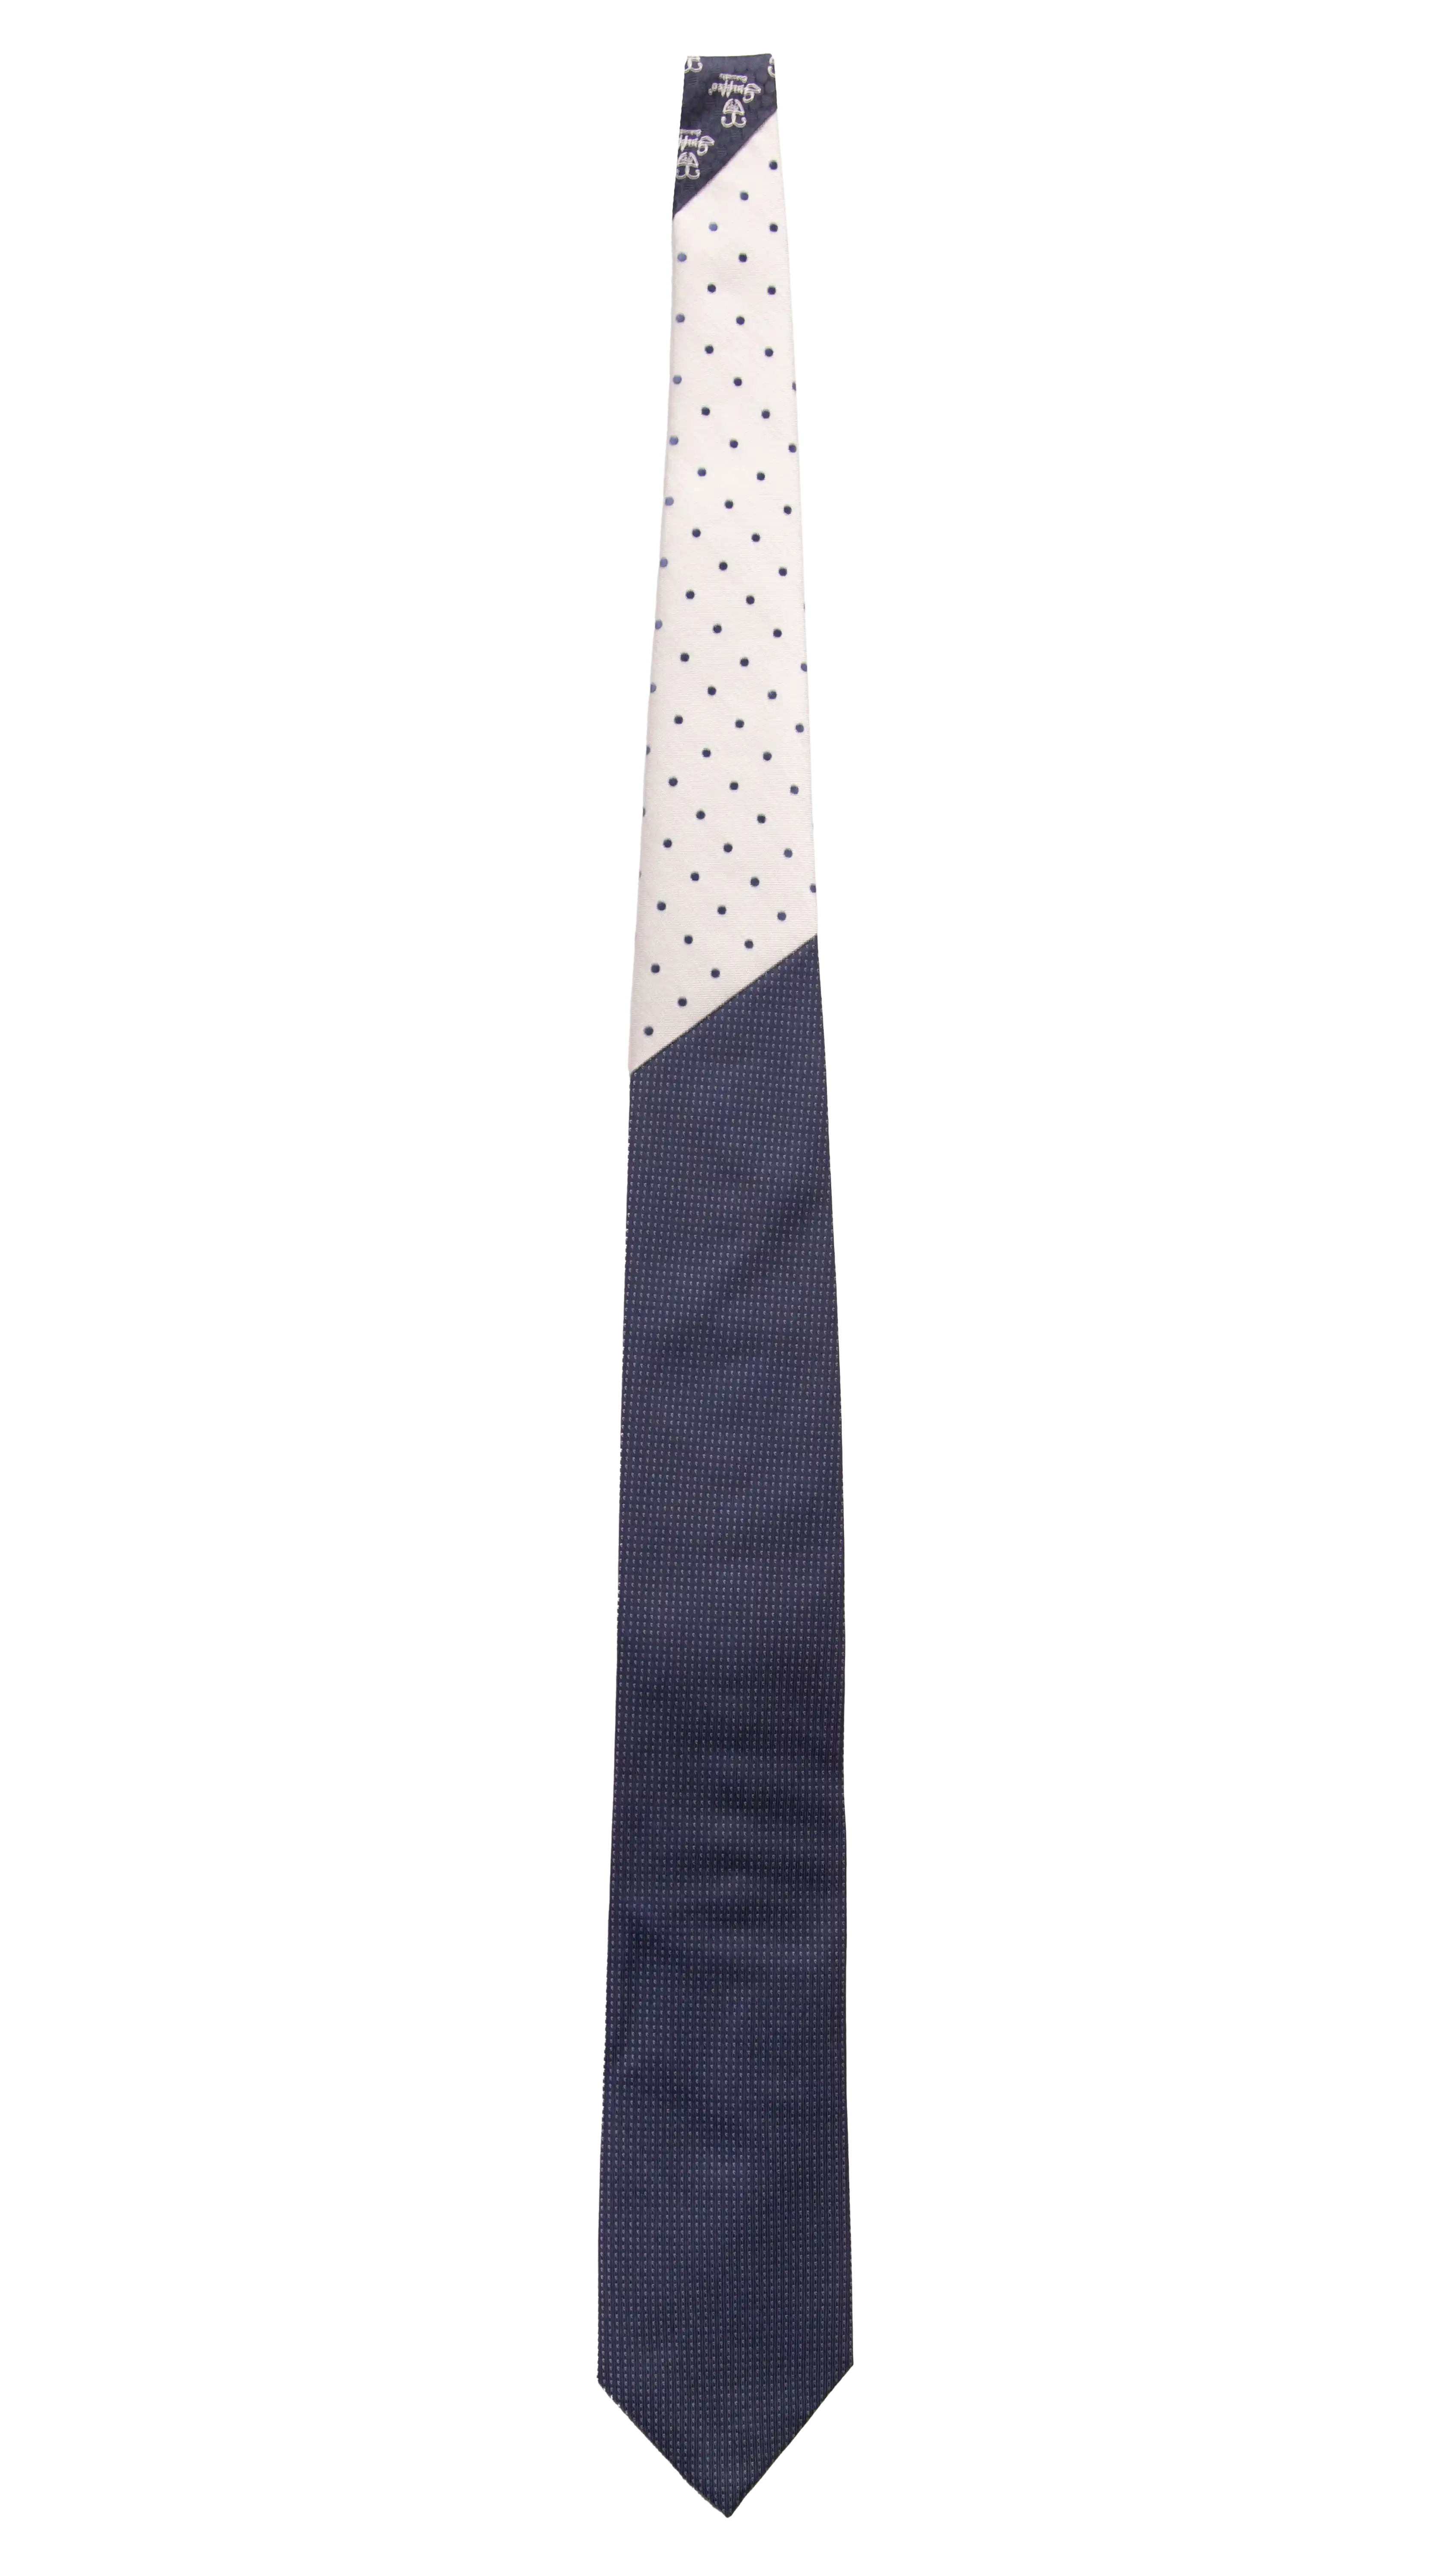 Cravatta Cerimonia Blu Punto a Spillo Grigio Argento Nodo in Contrasto Grigio Argento Pois Blu Made in Italy Graffeo Cravatte Intera